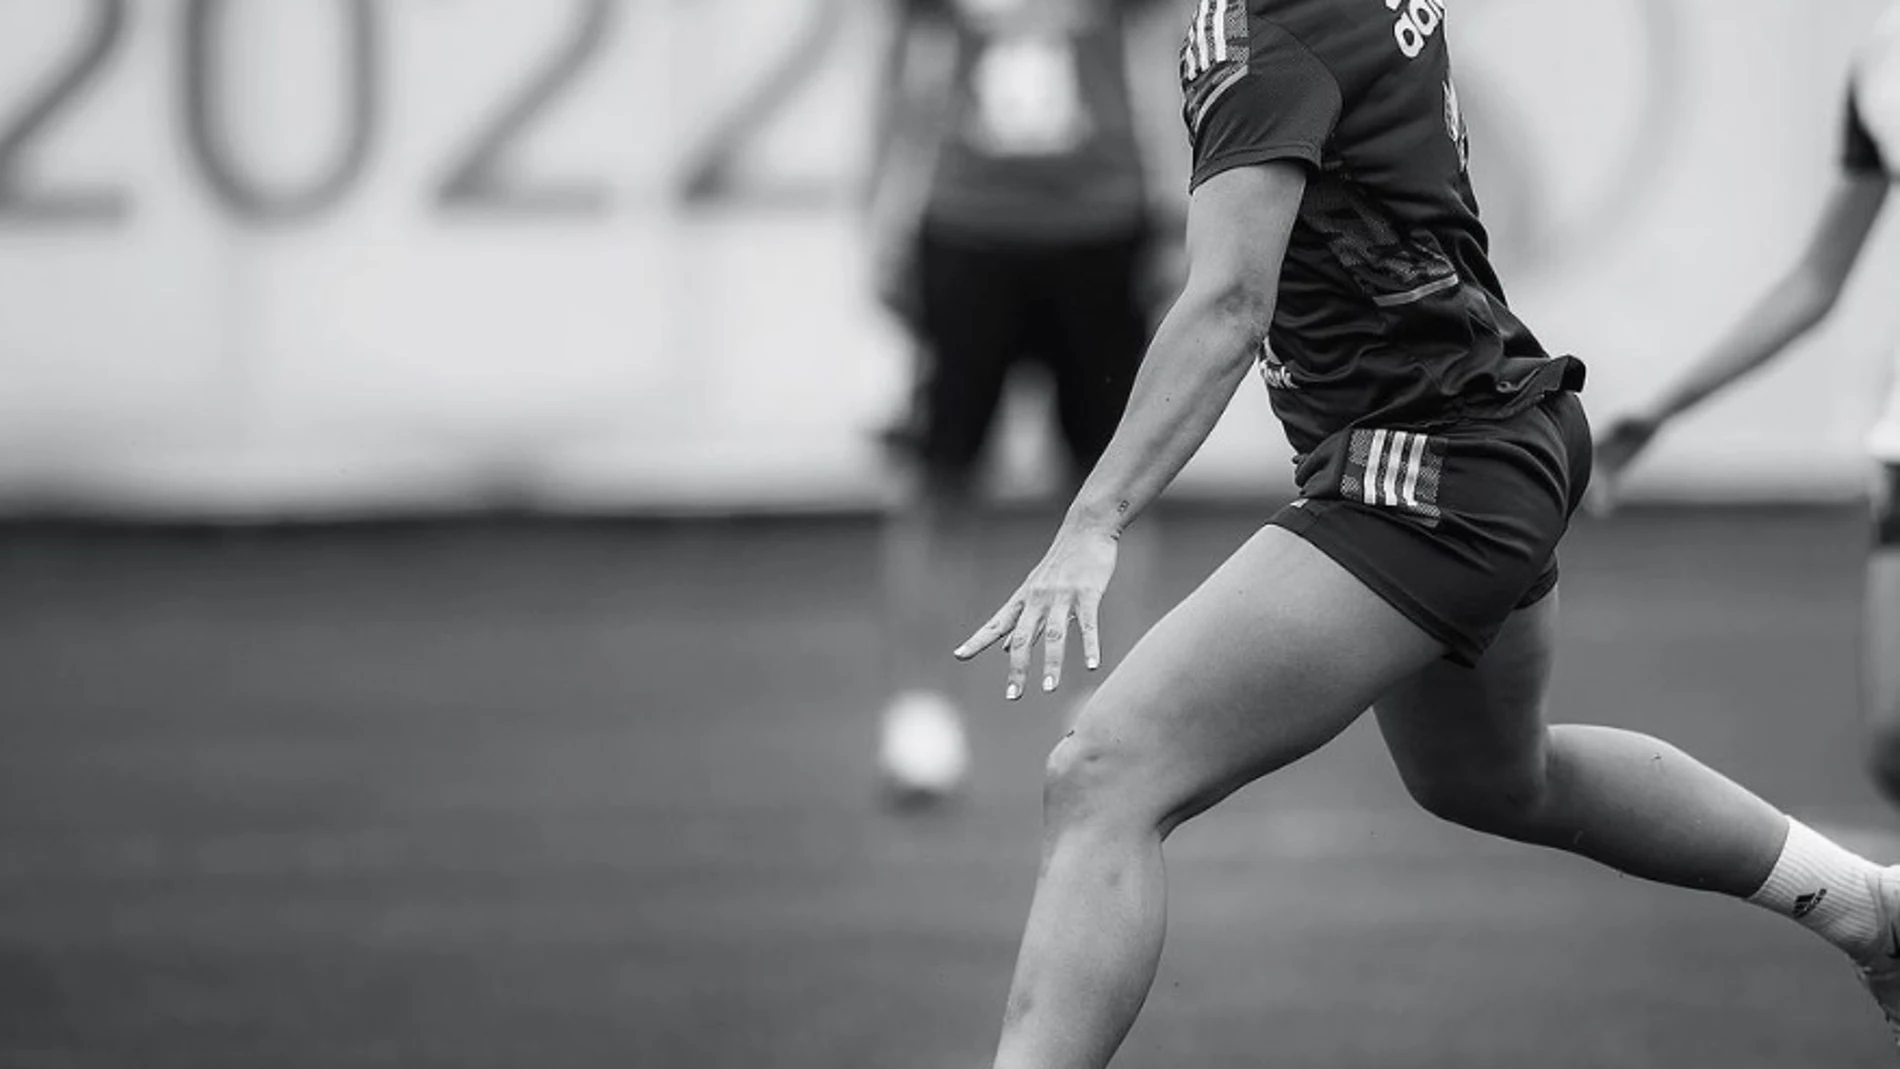 La internacional de la selección española Alexia Putellas en el entrenamiento en el que se lesionó en la rodilla iquierda y que causará baja para la Eurocopa de 2022 en Inglaterra. RFEF 06/07/2022